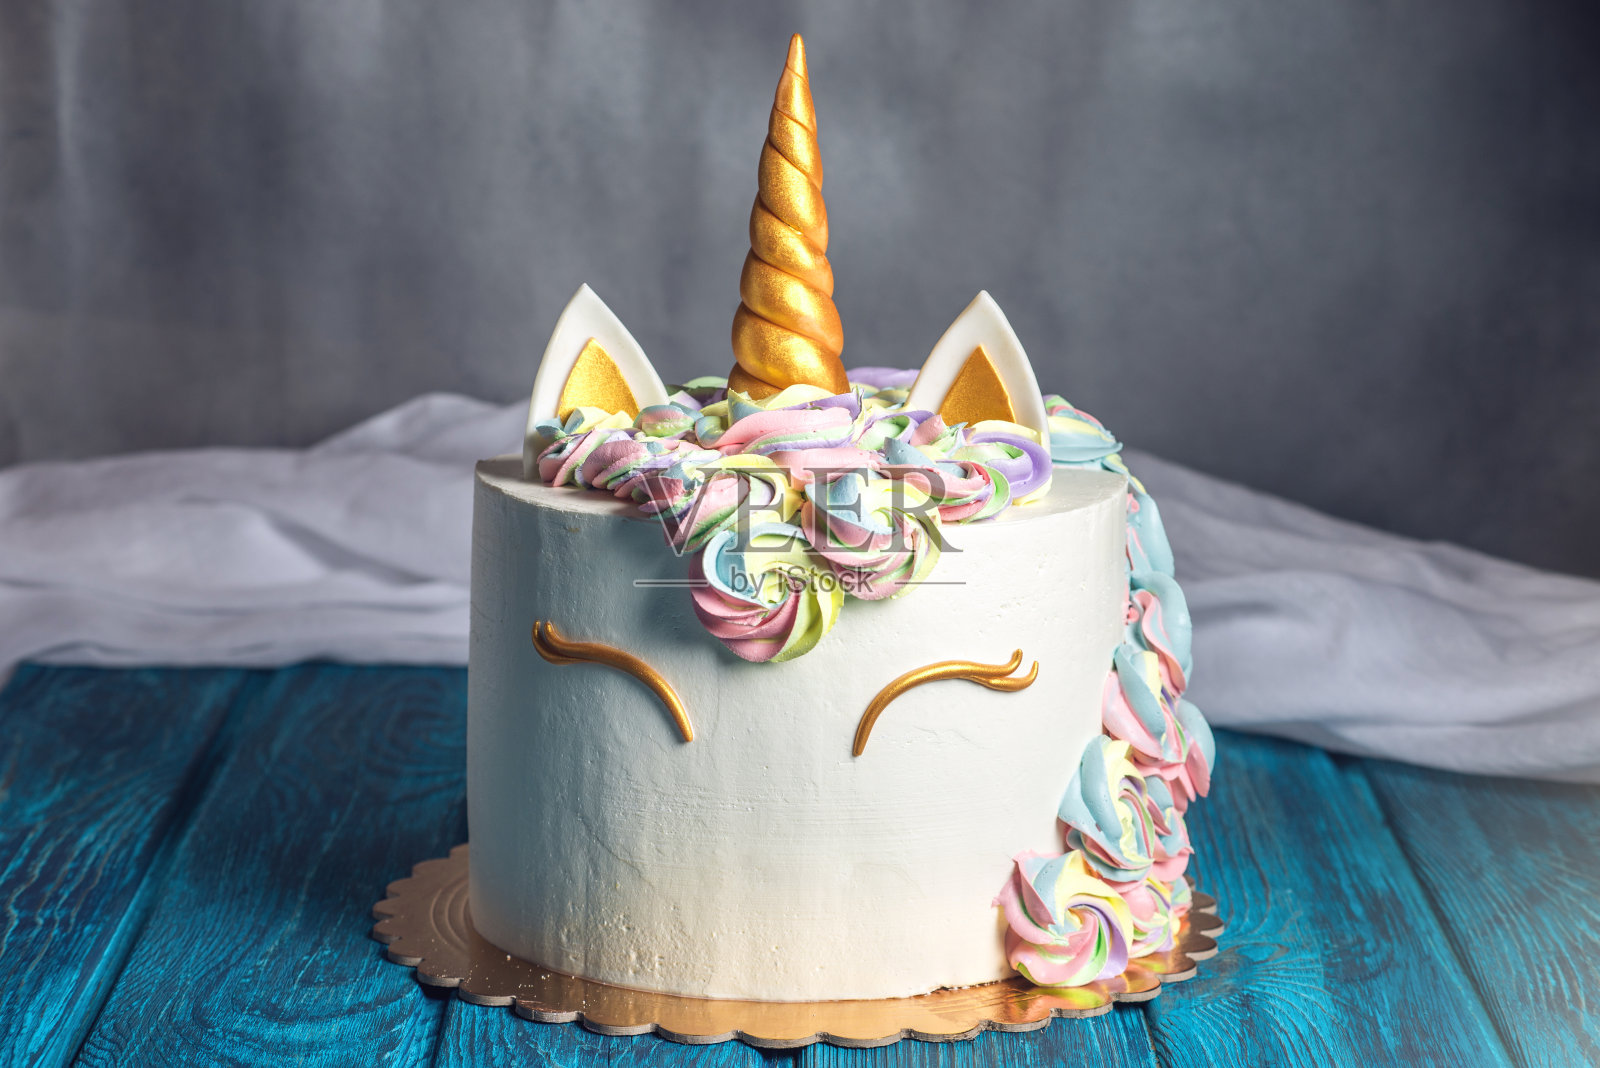 漂亮亮丽的蛋糕装饰成梦幻独角兽的形式。为孩子们的生日设计的节日甜点照片摄影图片